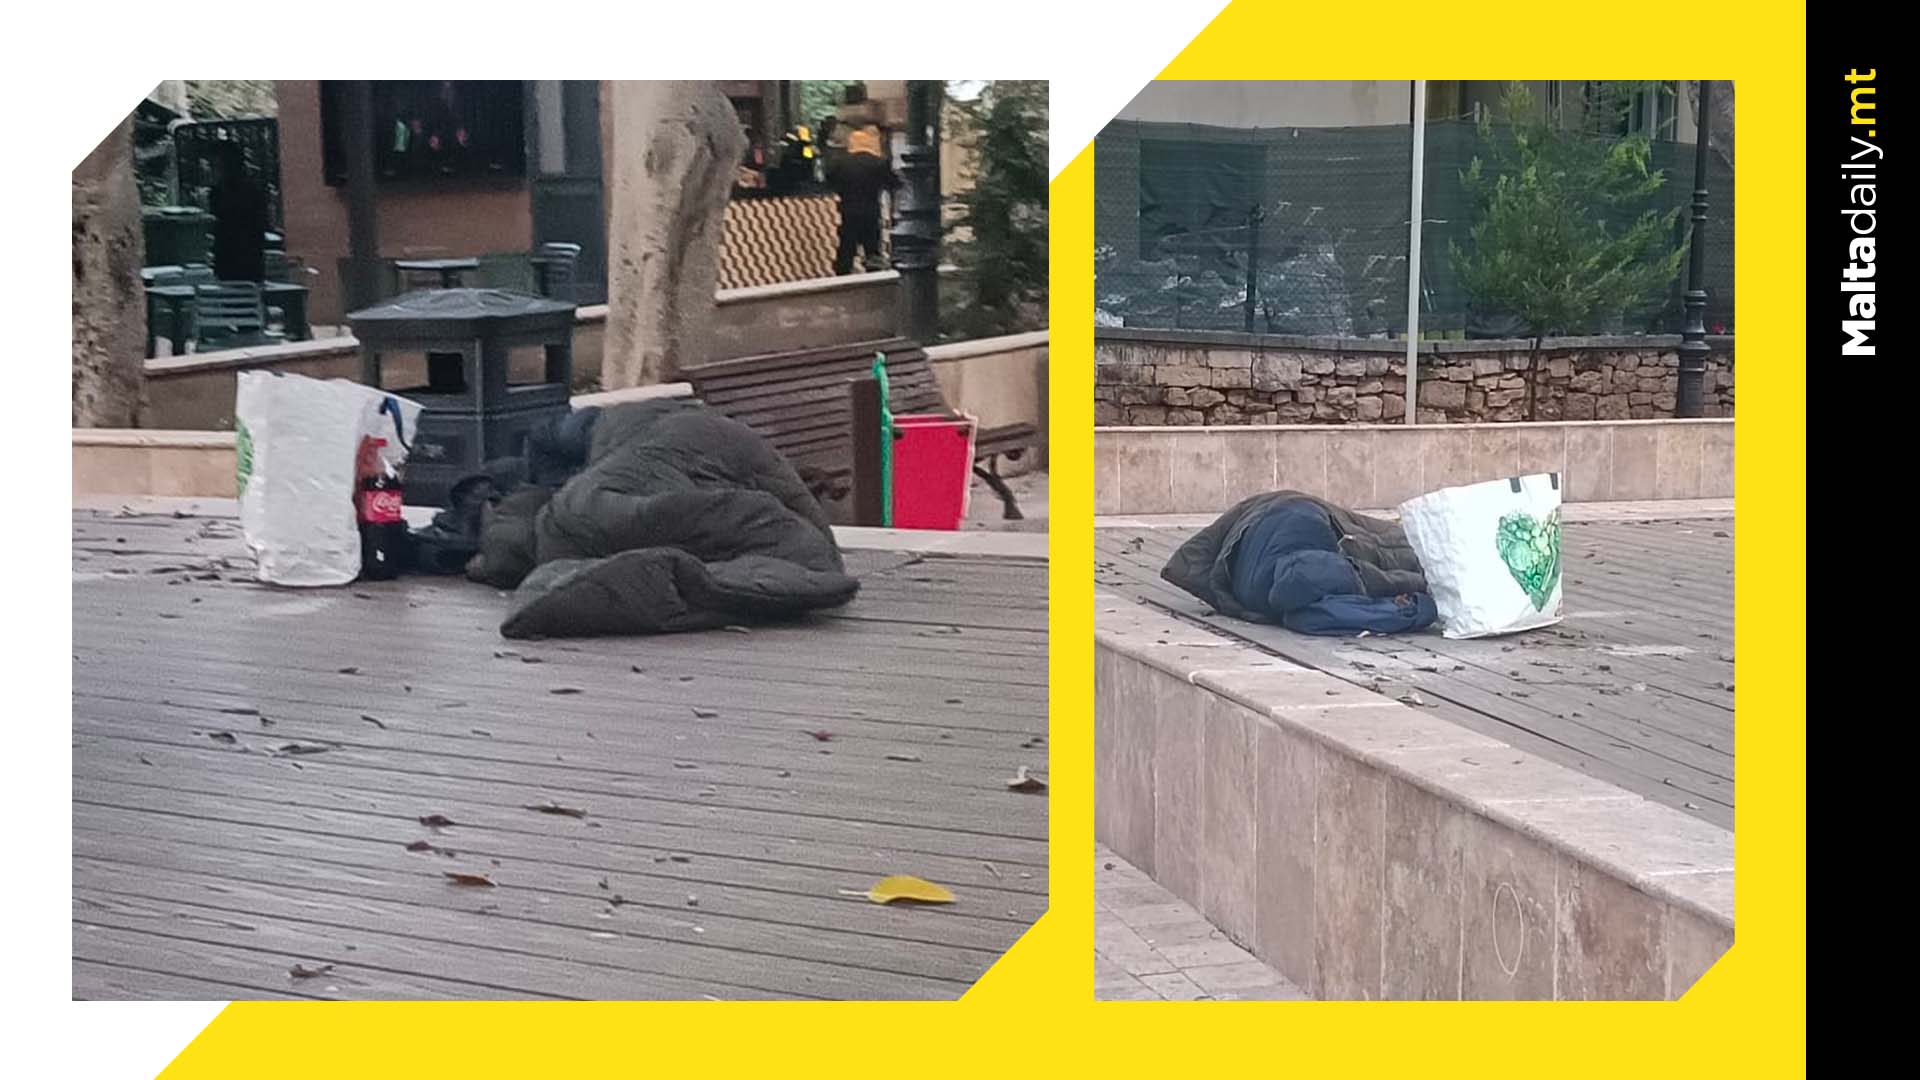 Homeless persons sleeping in Birkirkara garden 'becoming a norm'